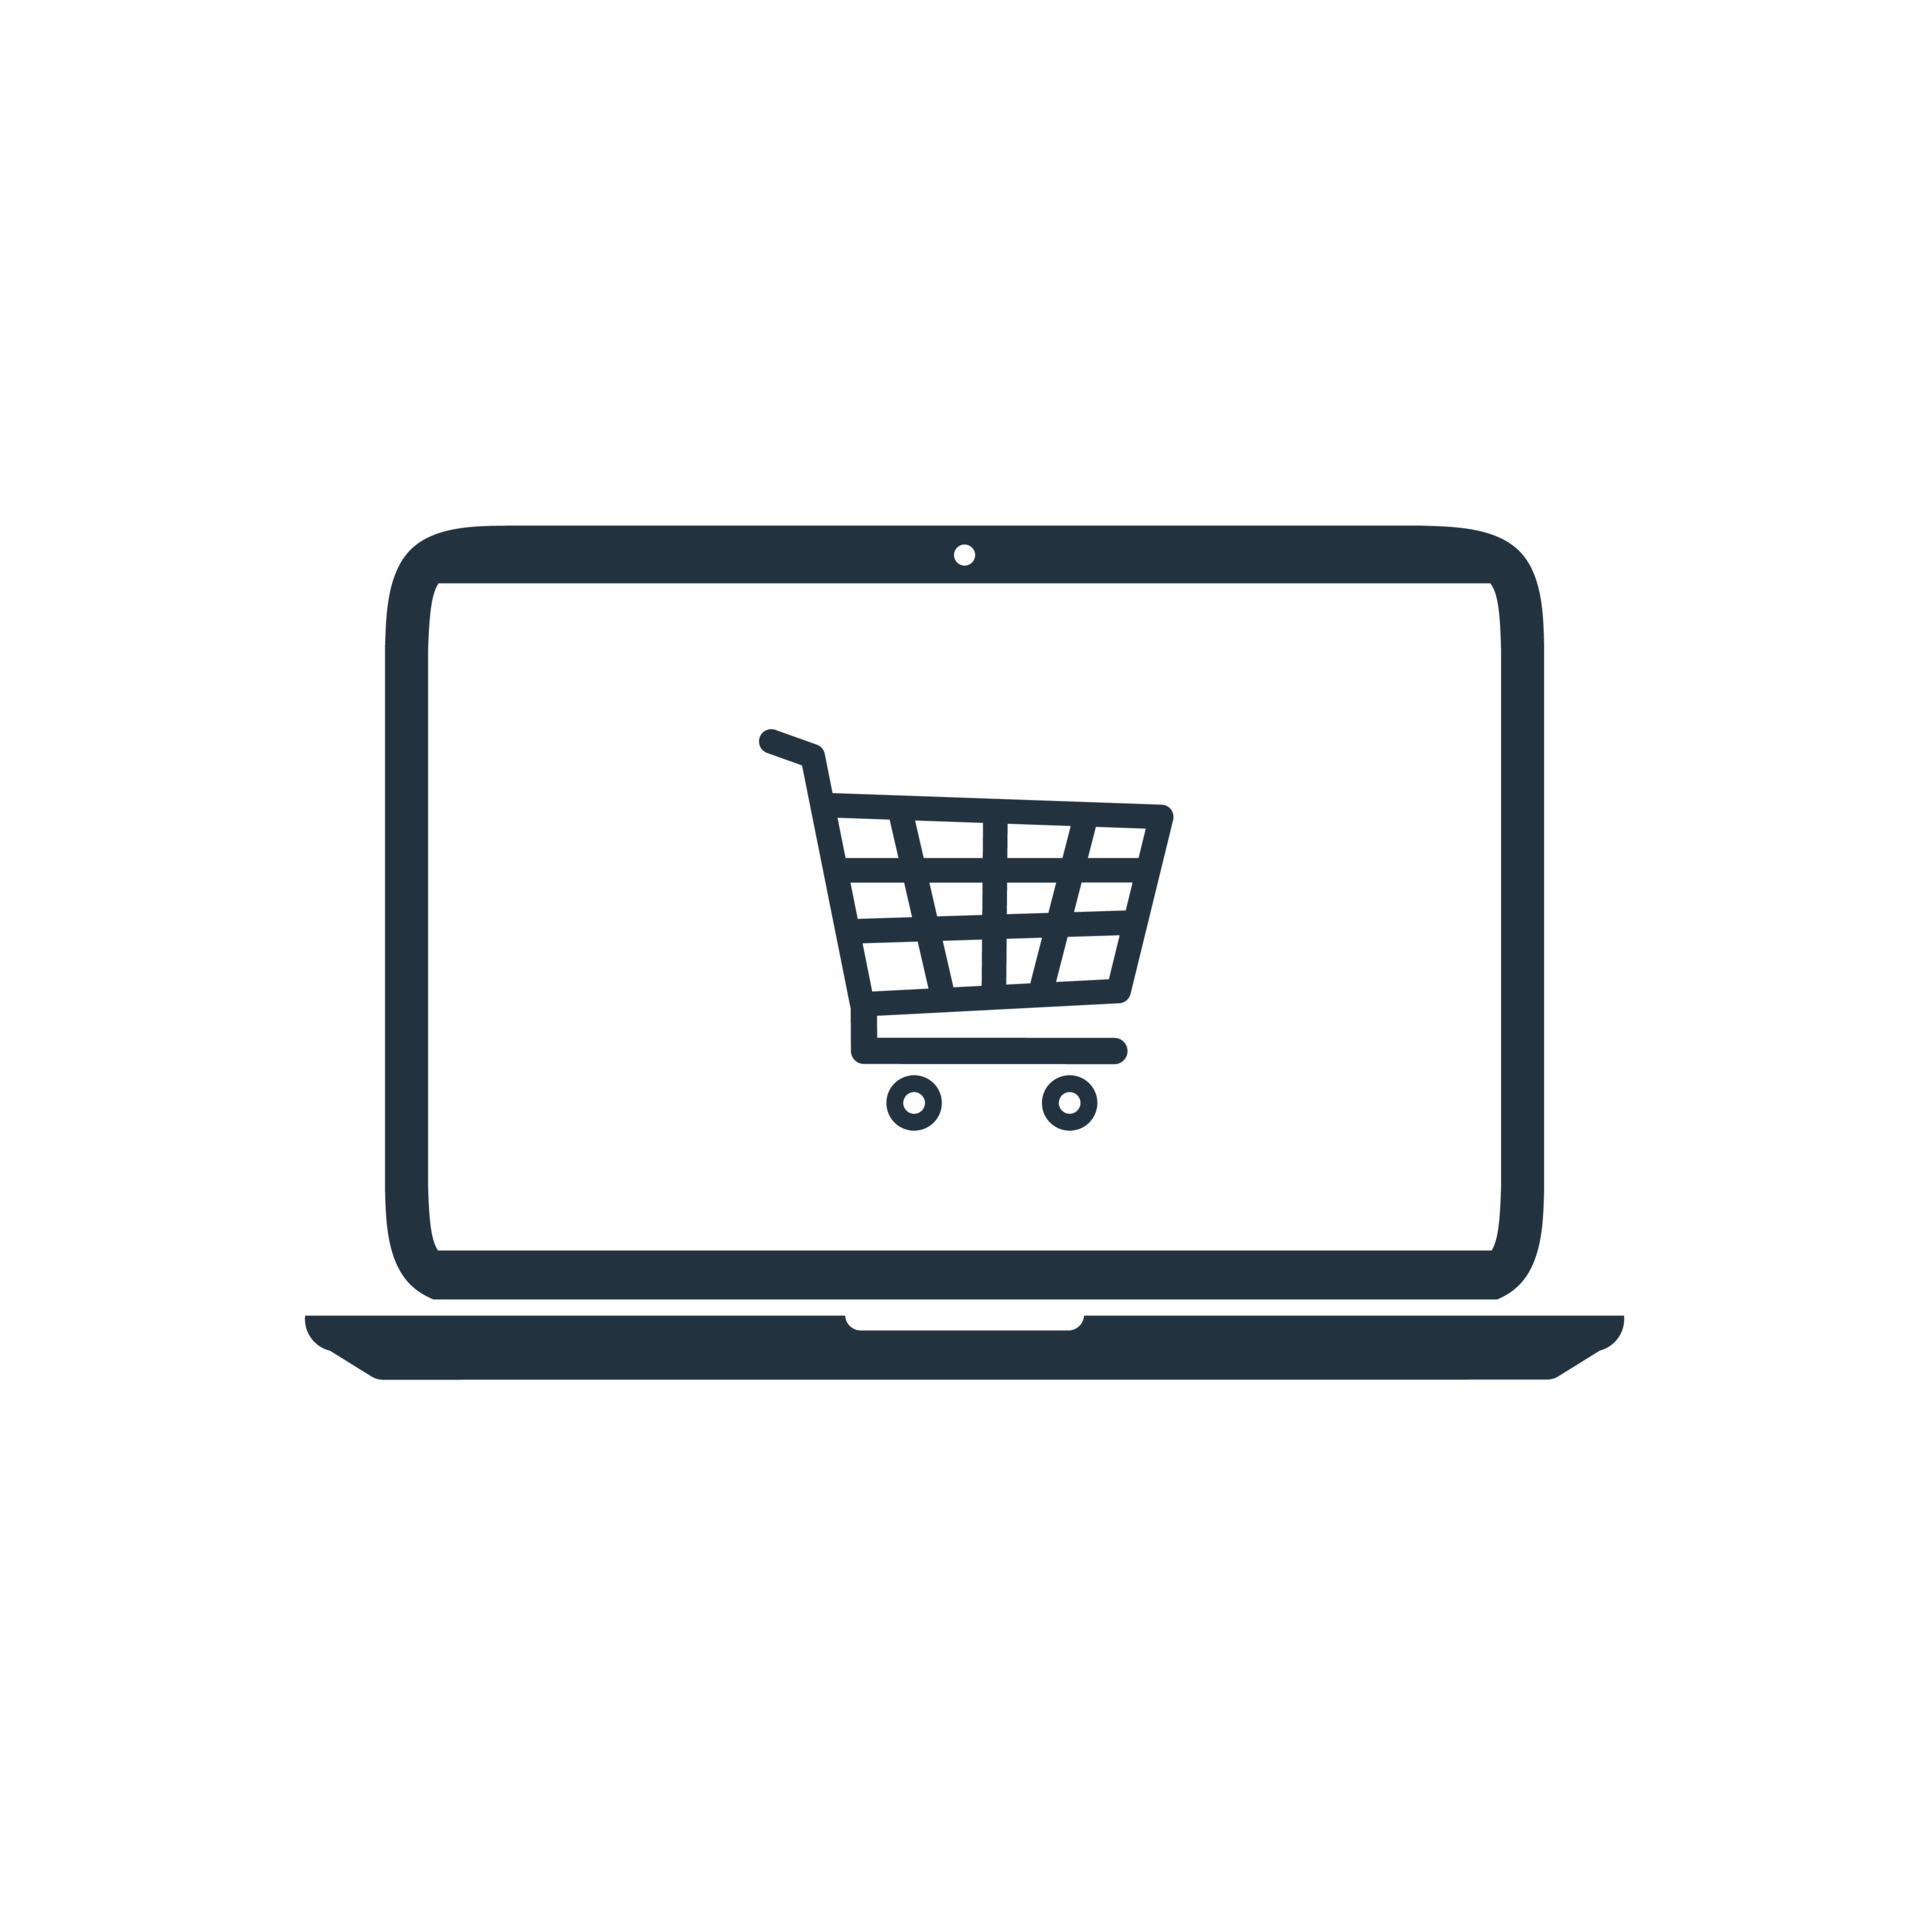 Biểu tượng mua sắm trực tuyến trên laptop sẽ giúp tăng tính chuyên nghiệp của mọi trang web của bạn. Với chất lượng đẹp và phong cách hiện đại, chúng tôi sẽ cung cấp cho bạn những biểu tượng mua sắm trực tuyến tốt nhất. Hãy cùng khám phá!